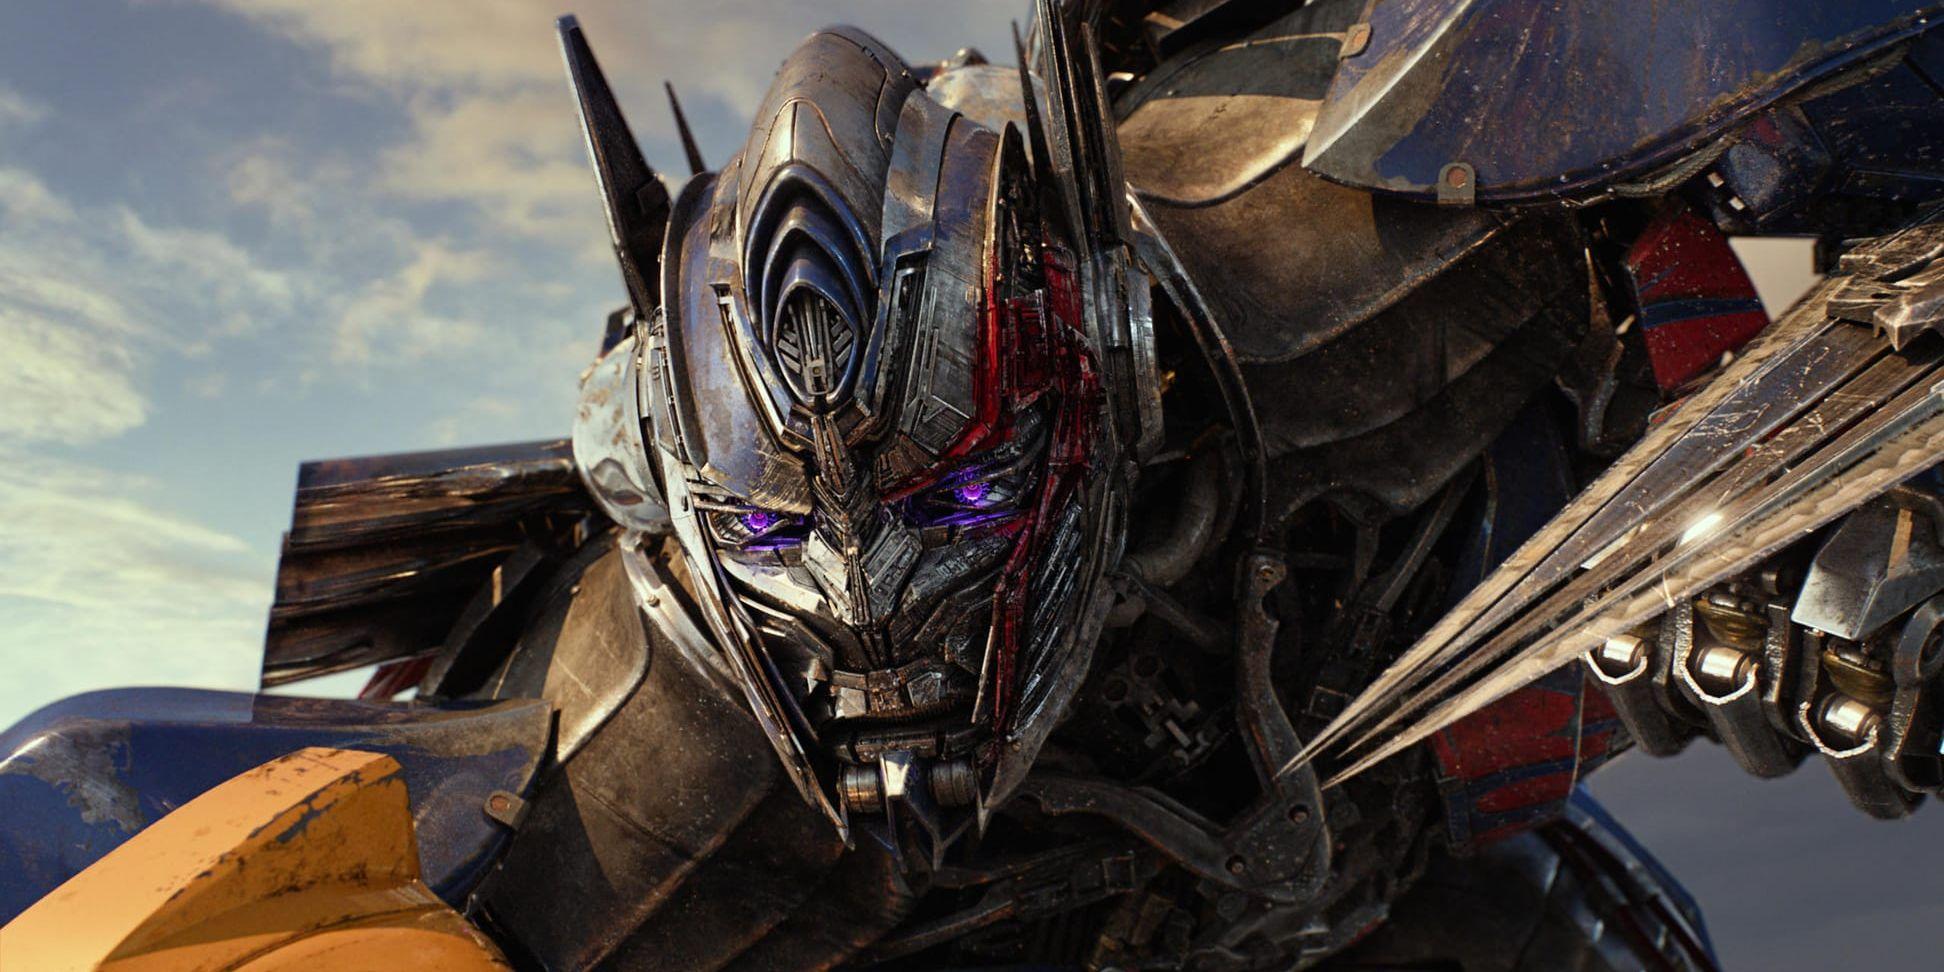 Transformern Optimus Prime kanske dyker upp i Netflix kommande serie "Transformers: War for Cybertron". Pressbild från filmen ""Transformers: The Last Knight" från 2017.